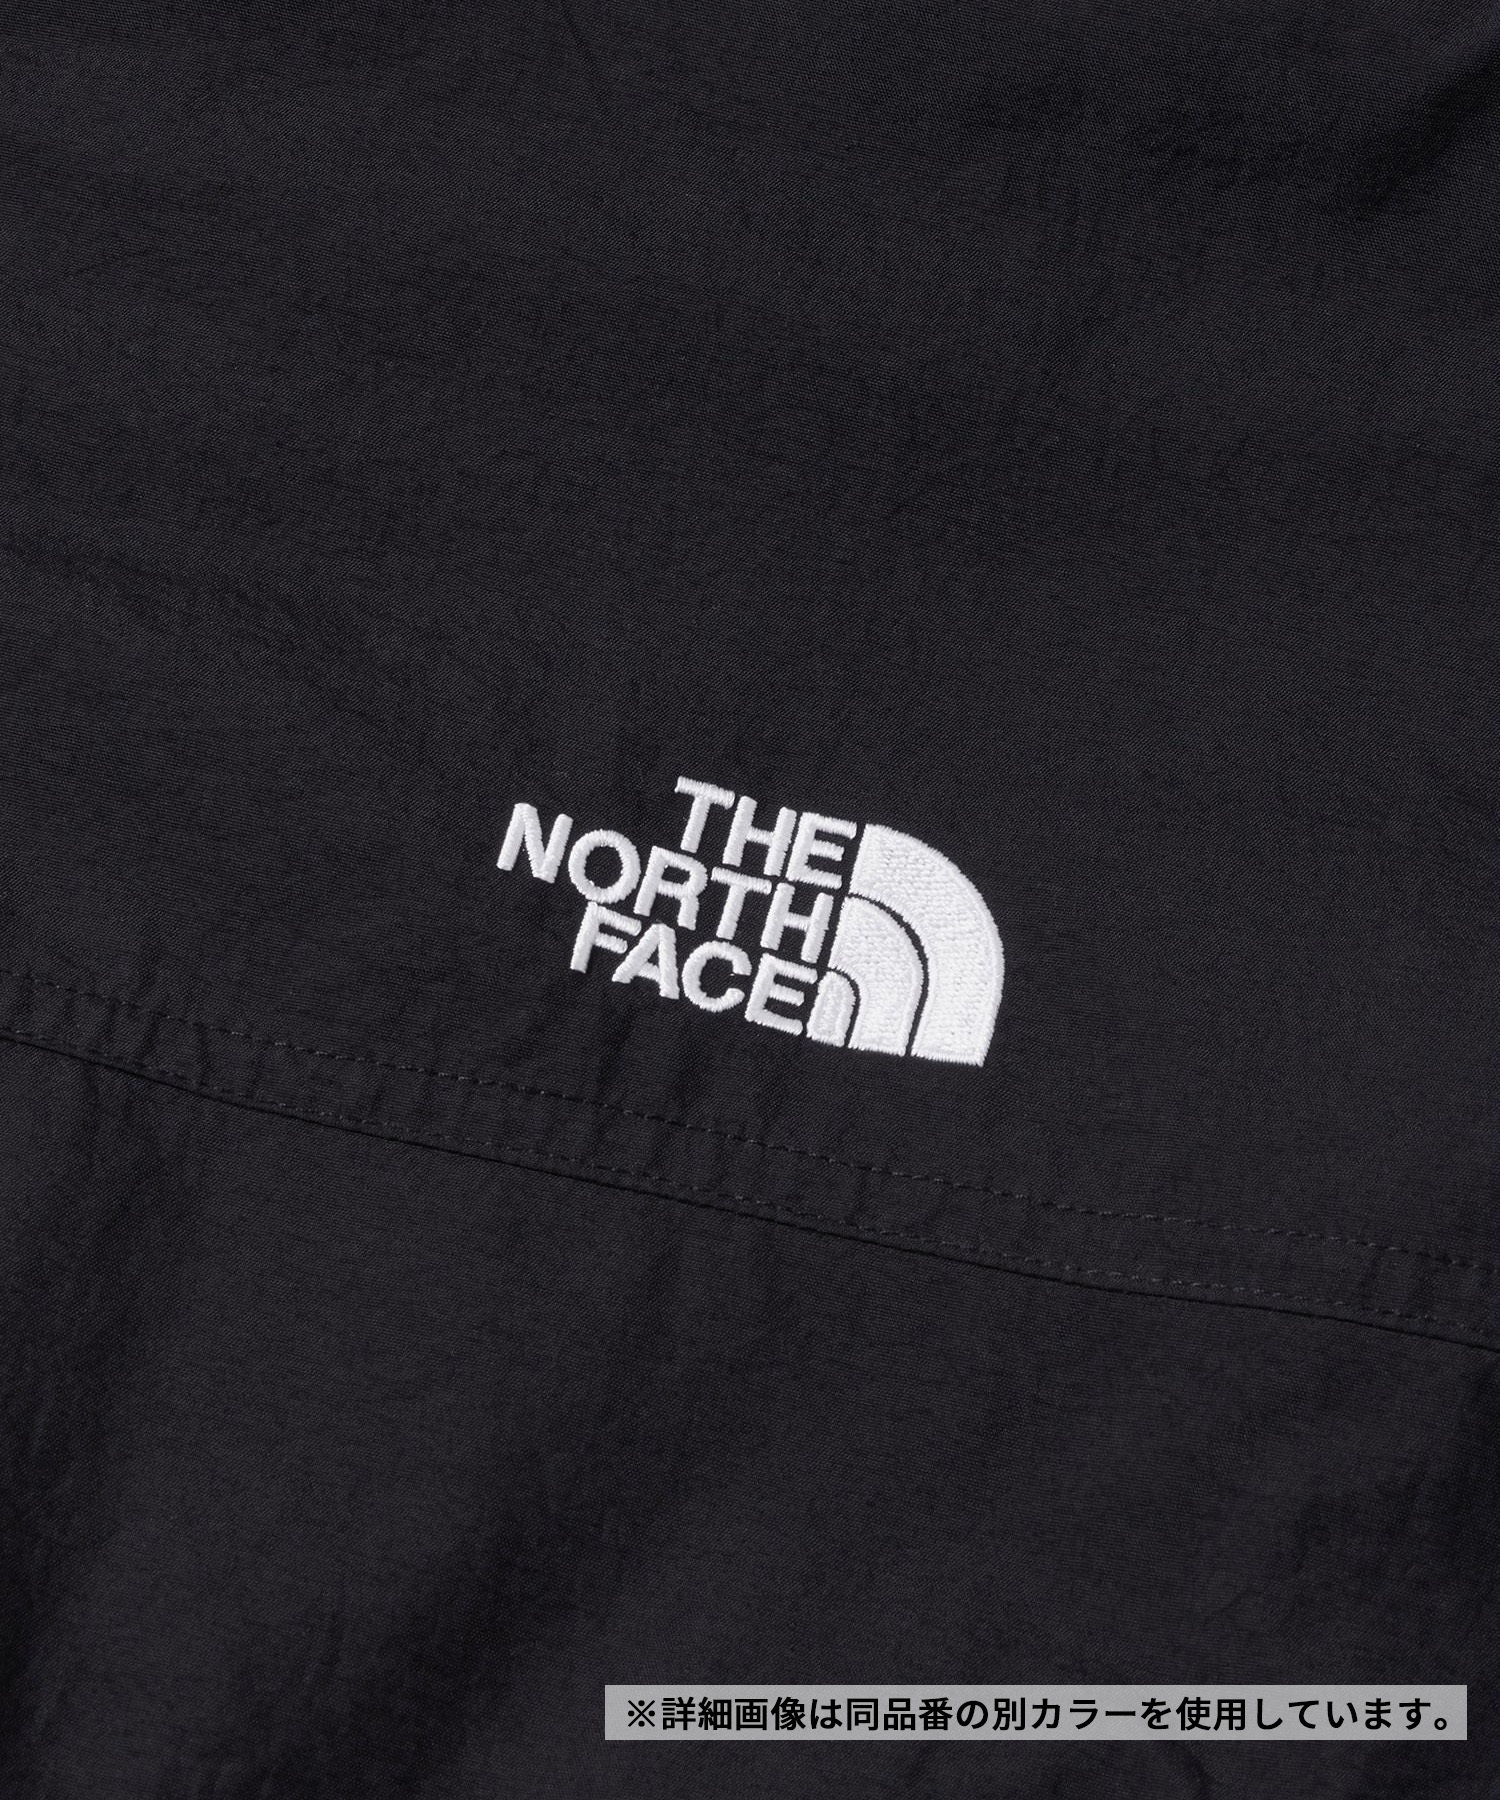 【マトメガイ対象】THE NORTH FACE/ザ・ノース・フェイス Compact Nomad Blouson コンパクトノマドブルゾン メンズ ジャケット 撥水 防風 NP72331(NK-S)